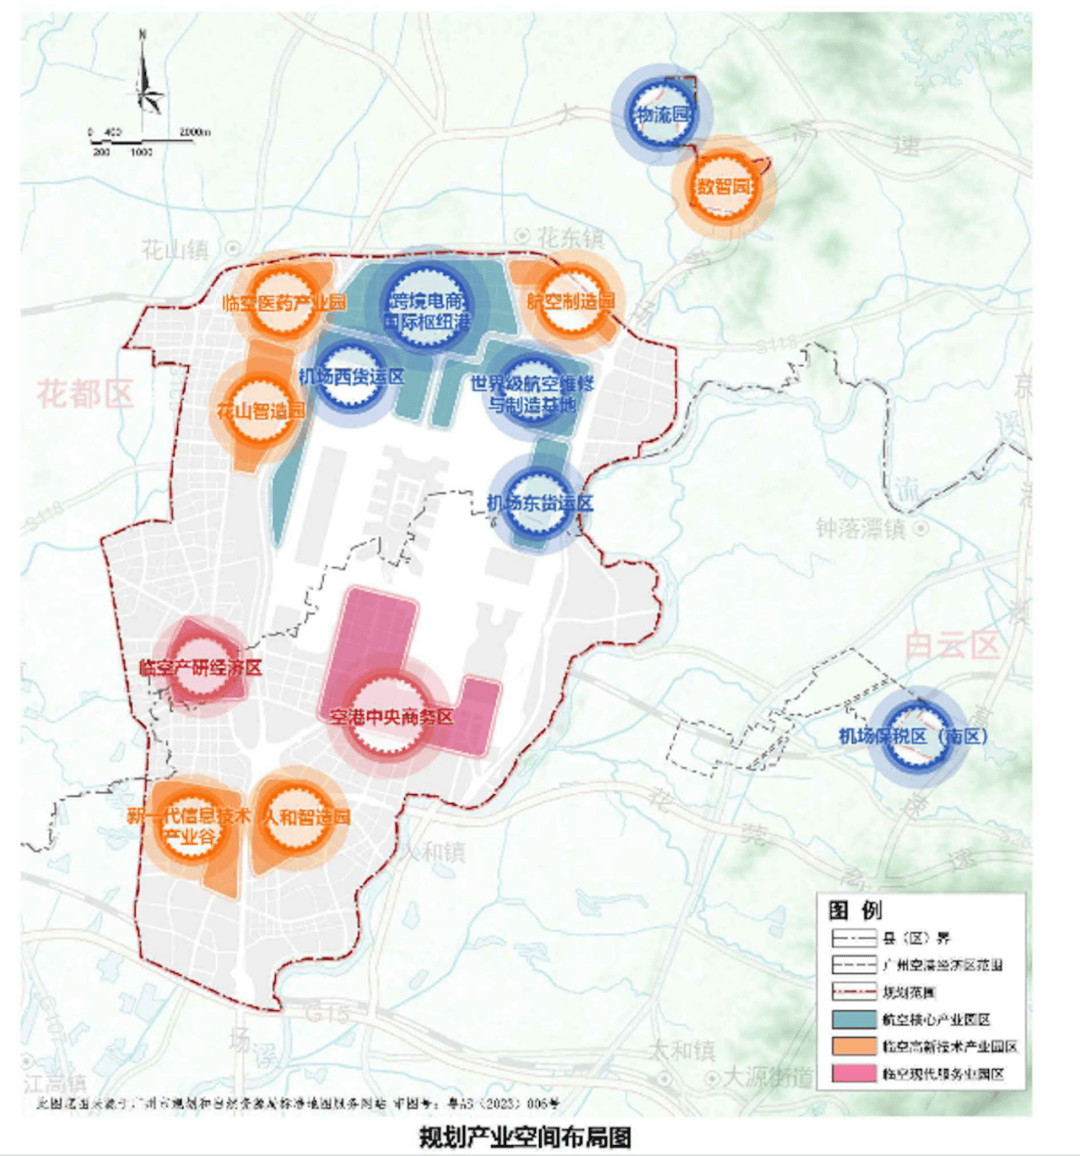 目前广州空港经济区的功能布局是把航空商务等功能放在靠近主城区的